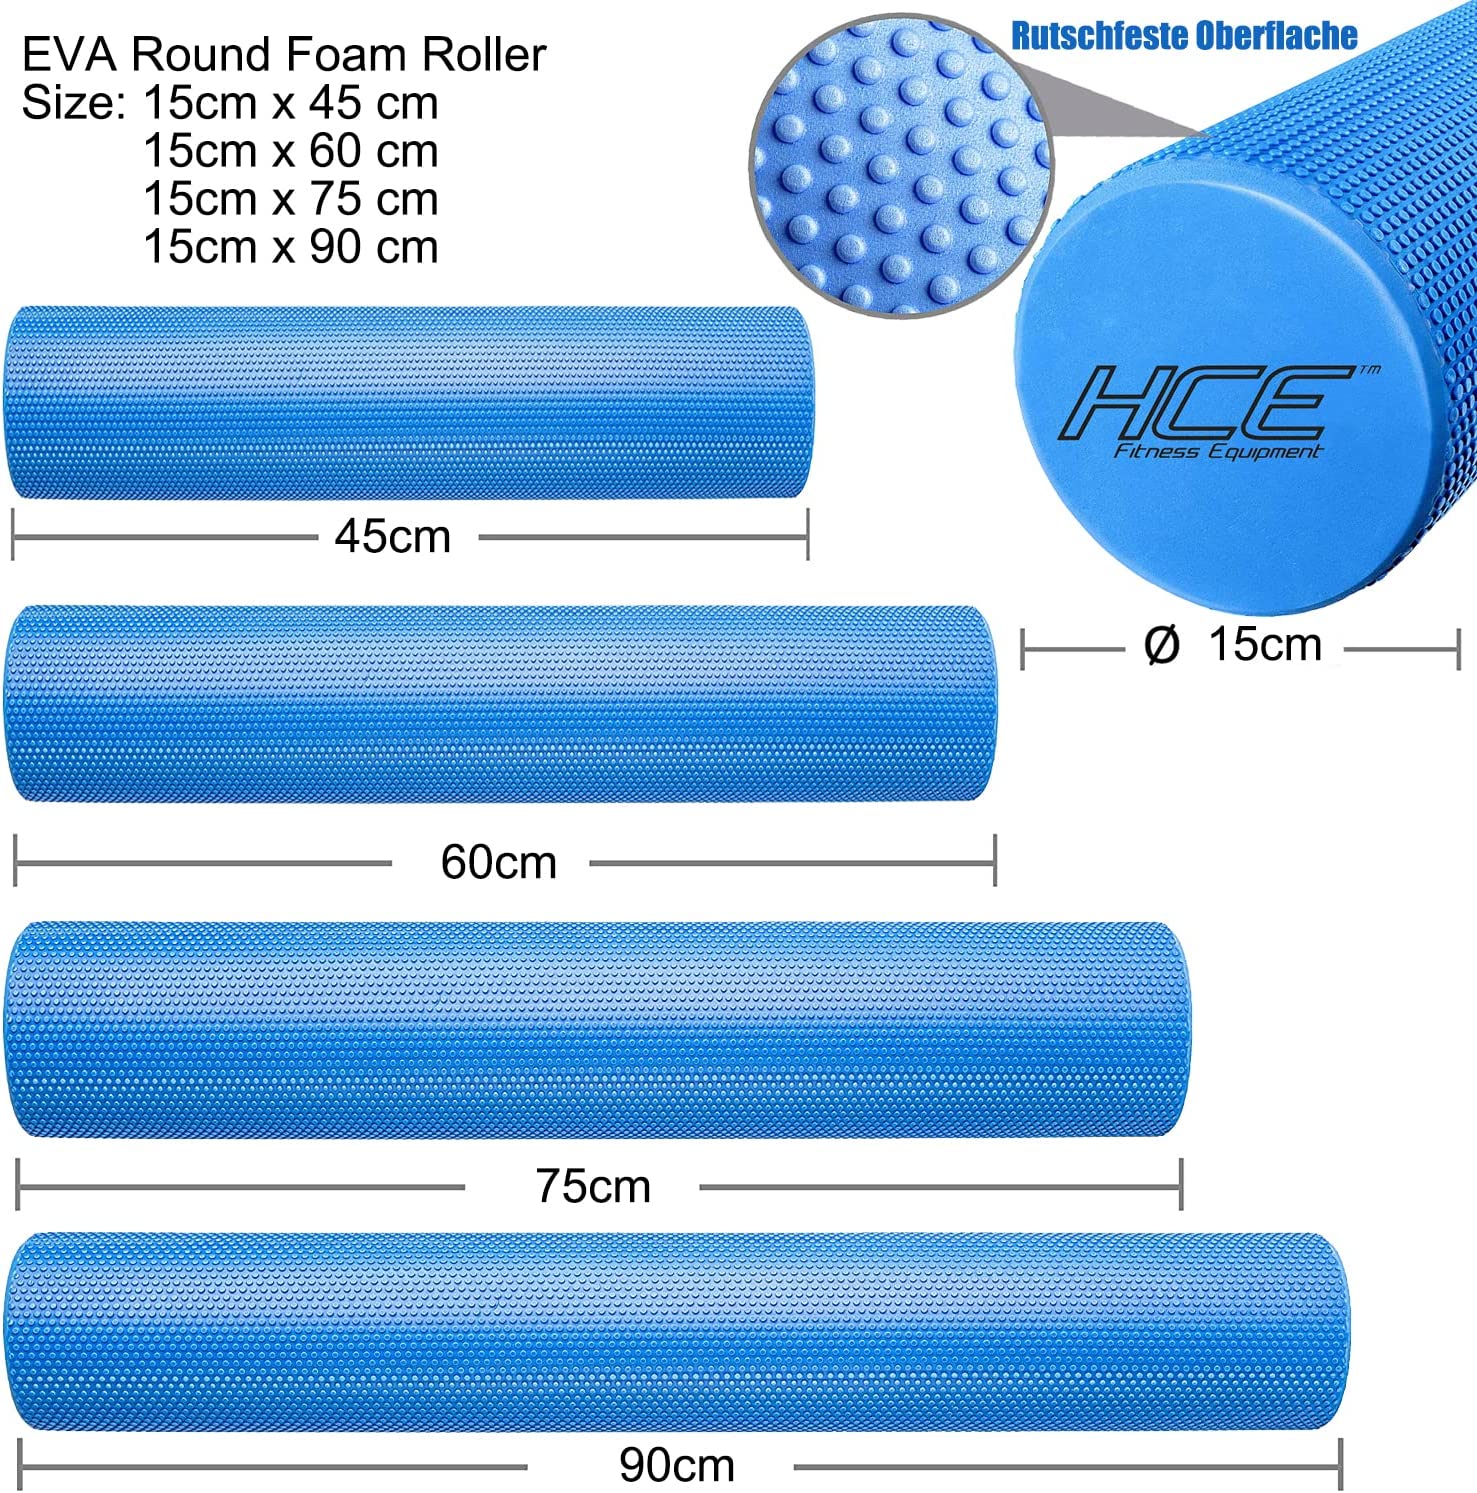 EVA Round Foam Roller 15cm x 45cm